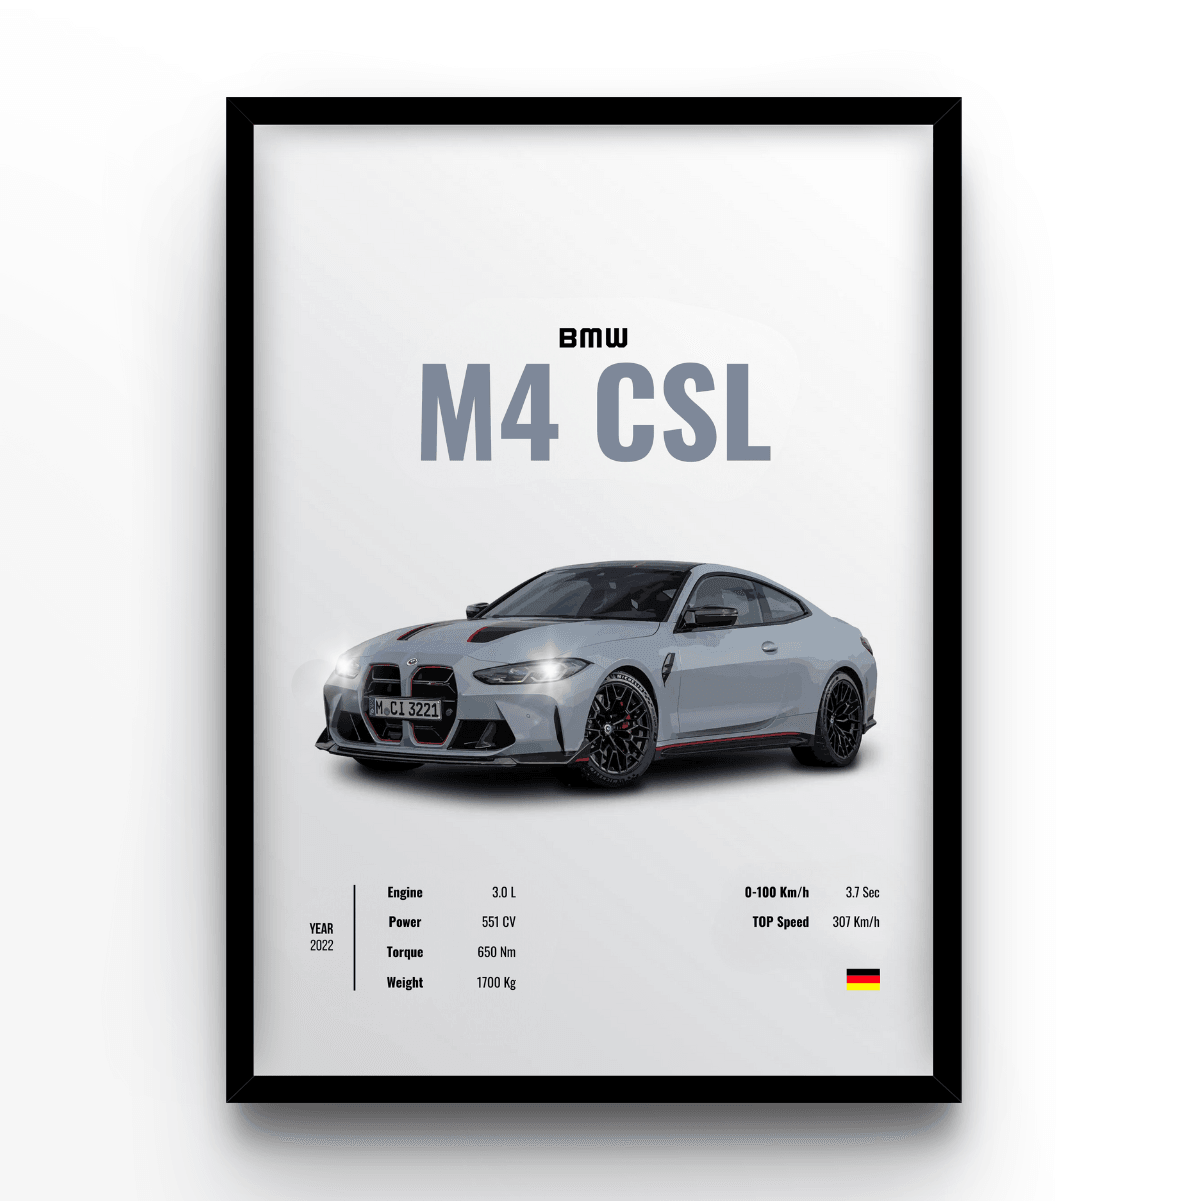 BMW M4 CSL - A4, A3, A2 Posters Base - Poster Print Shop / Art Prints / PostersBase